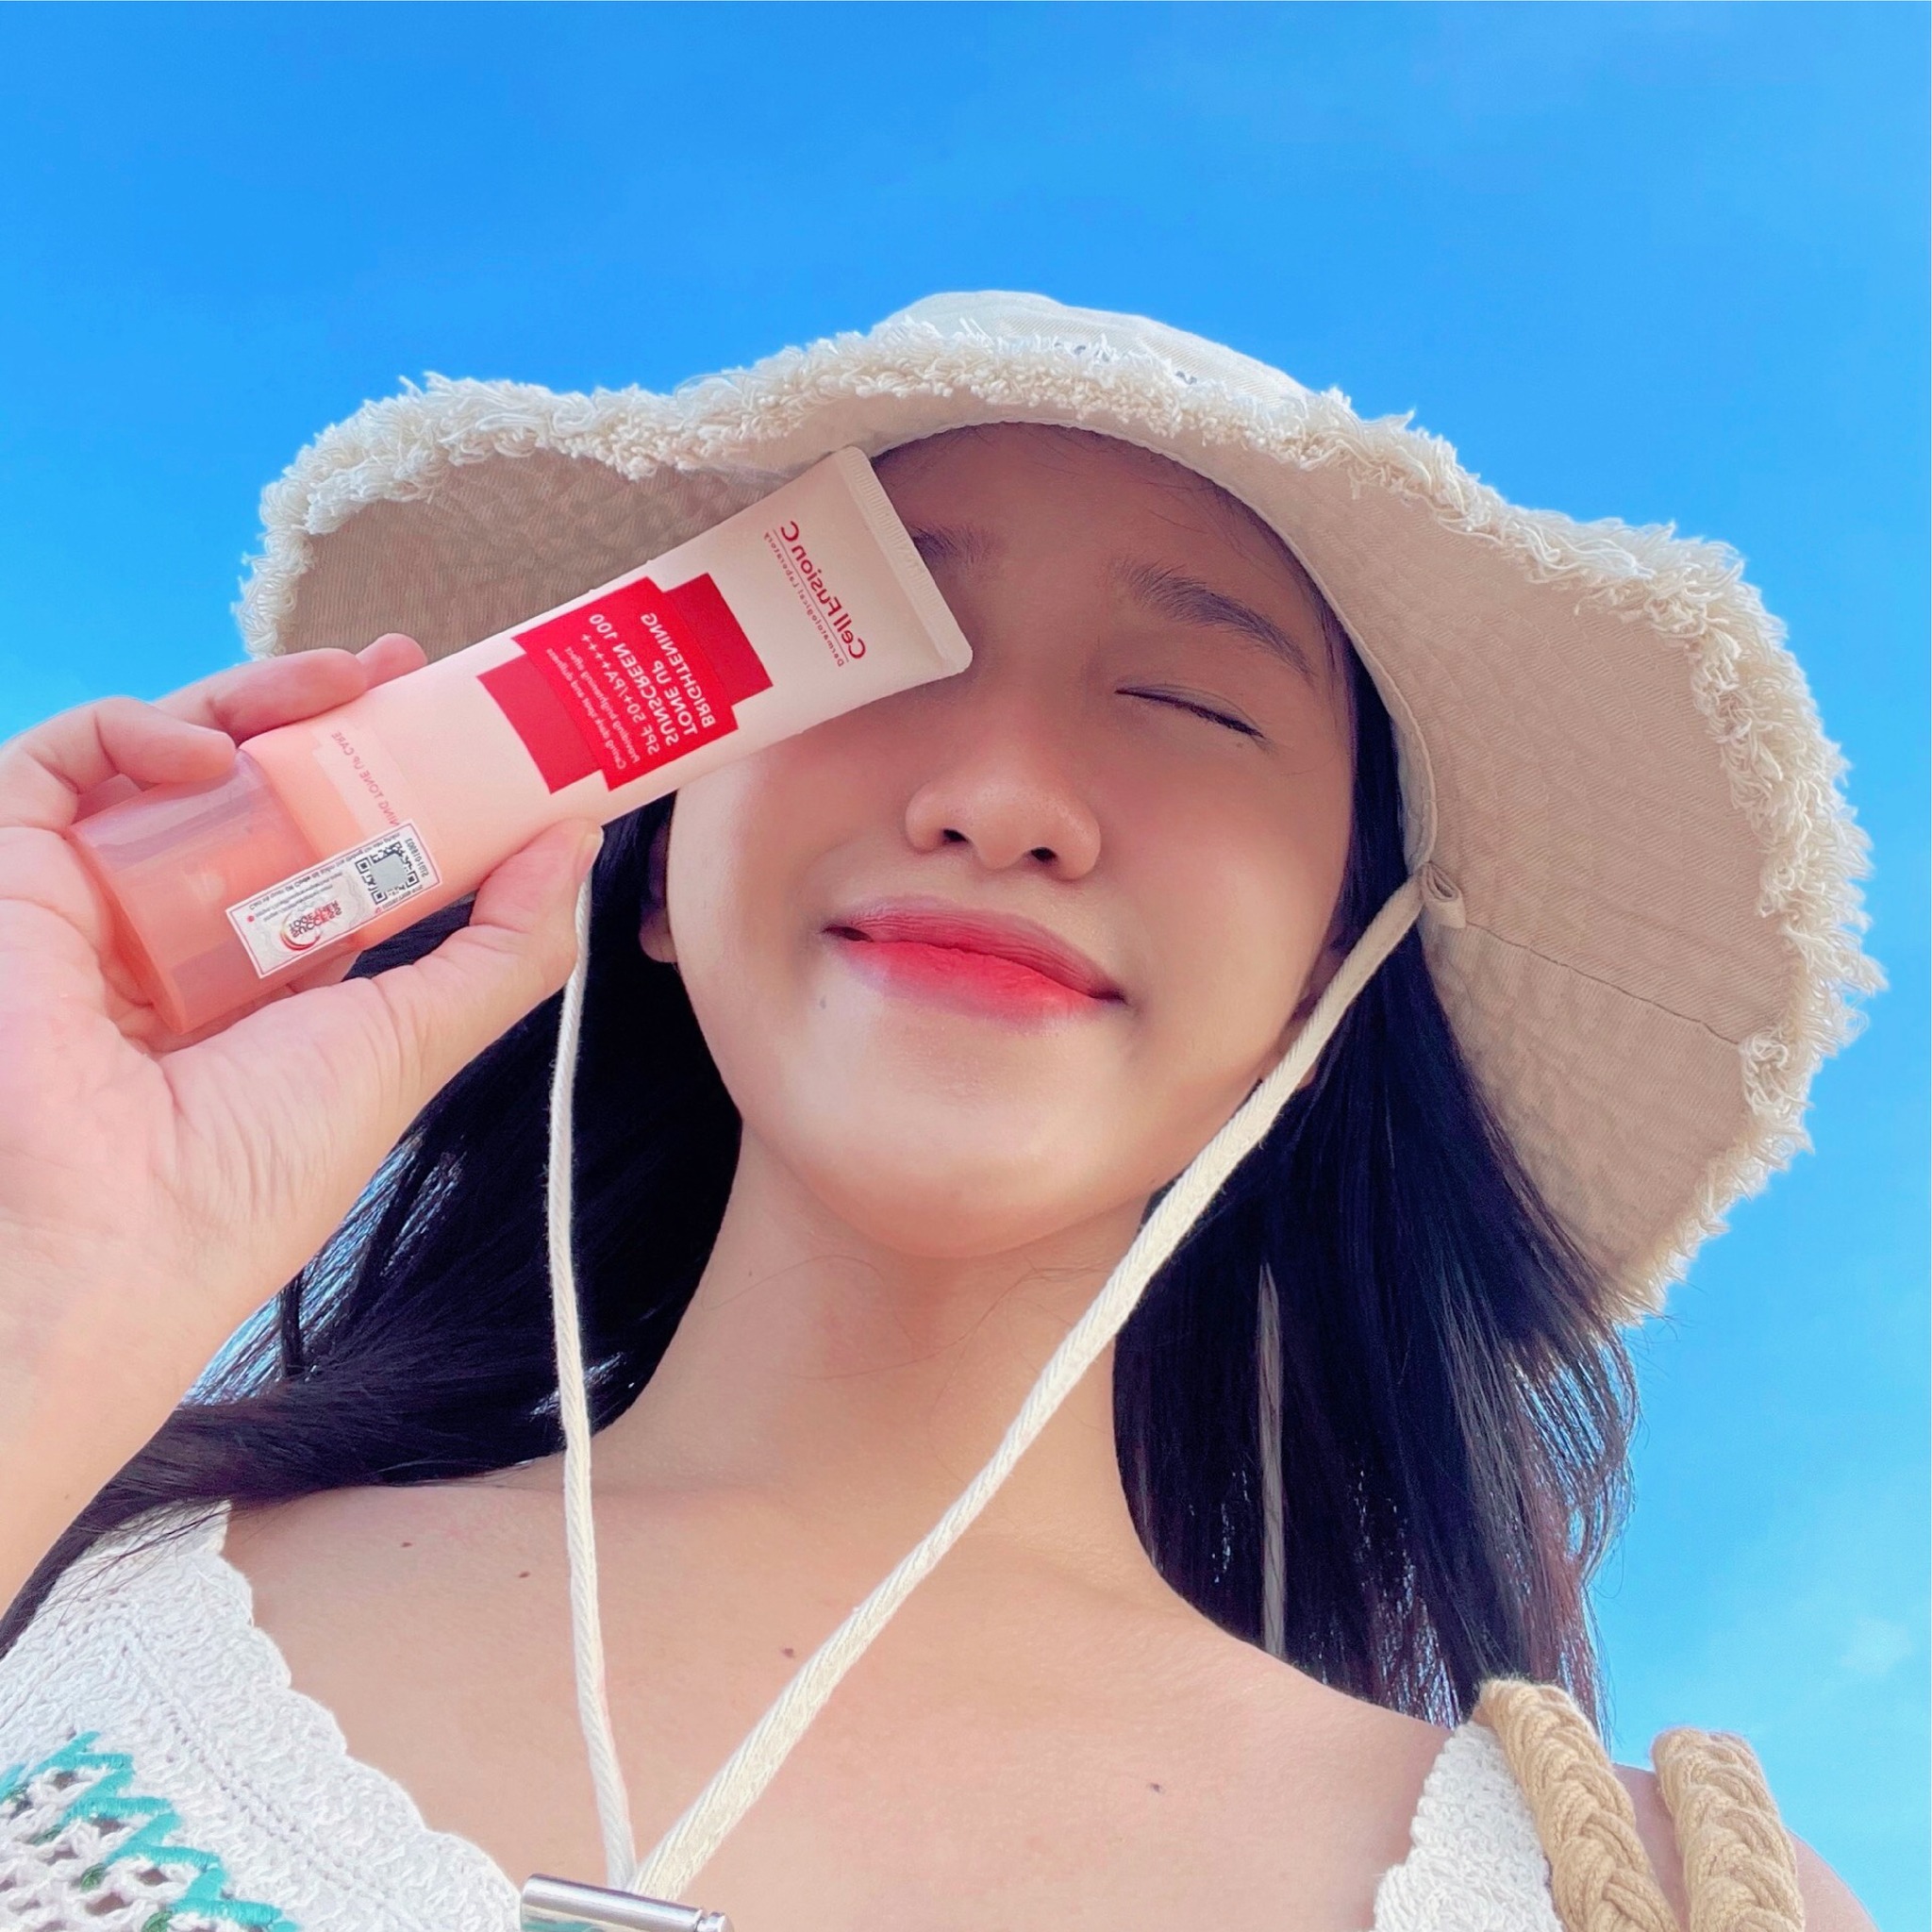 Kem chống nắng Cell Fusion C Hàn Quốc Giúp nâng tông, bảo vệ da khỏi tia UV, phục hồi da xỉ màu và không bết dính - QuaTangMe Extaste